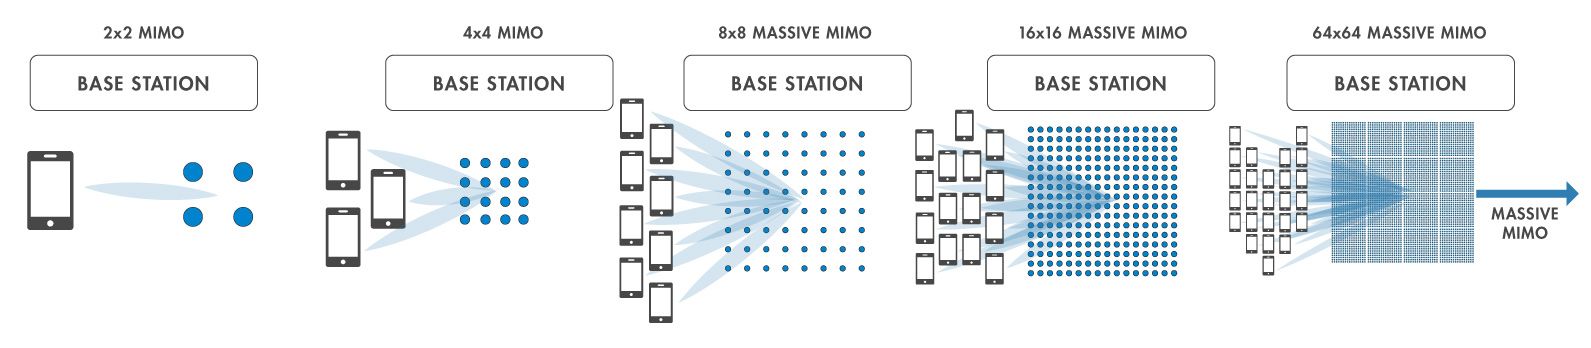 MIMO系统的类型。